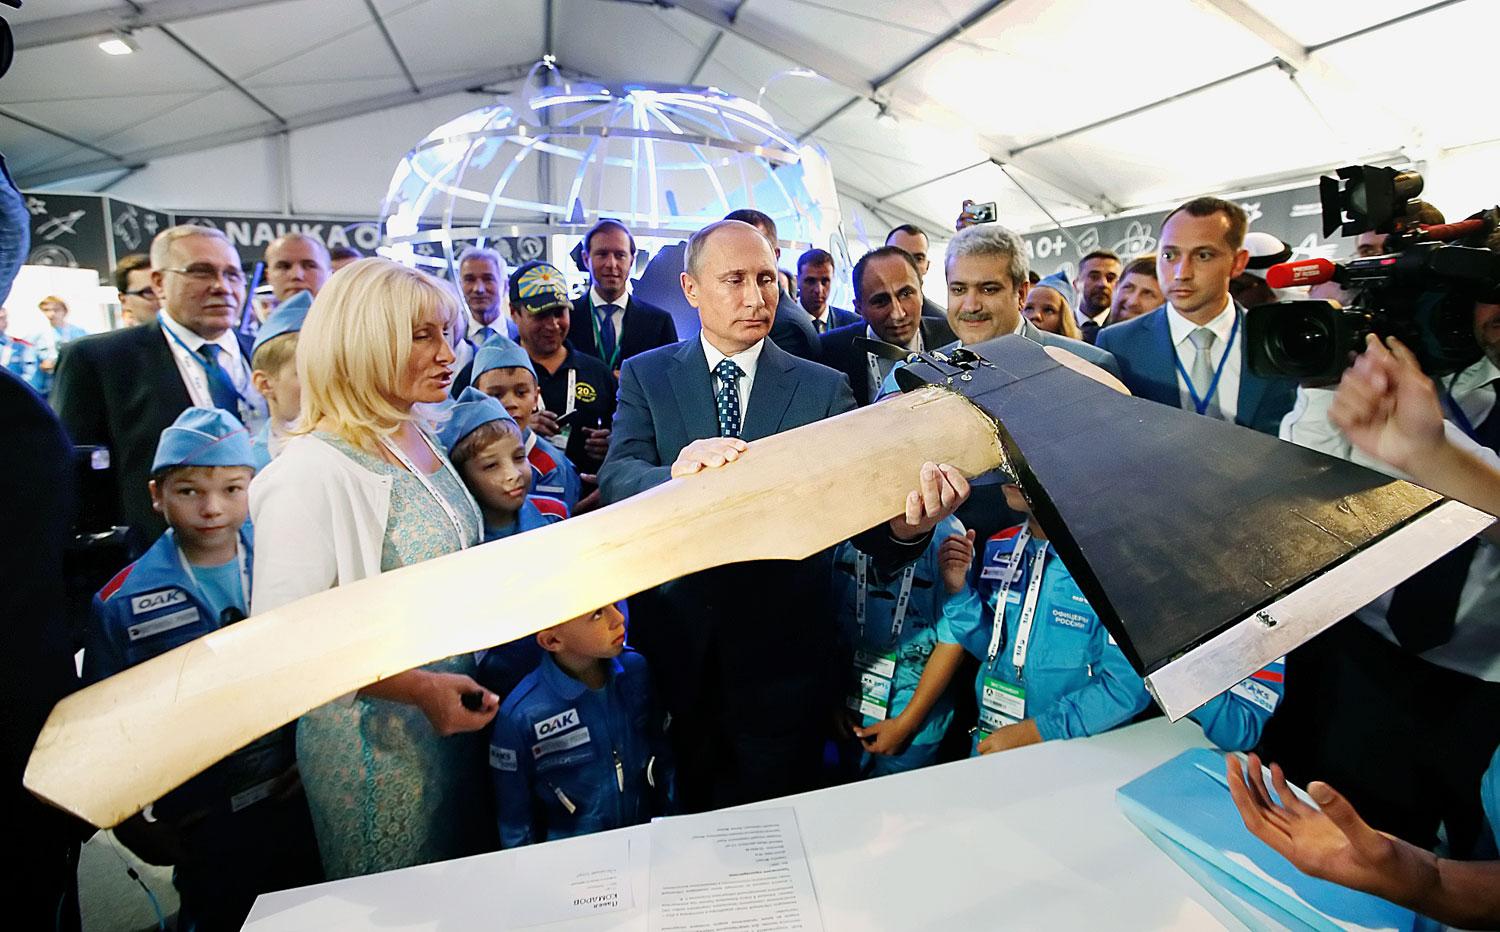 Baltának látszik, de valójában repülőgép. Vlagyimir Putyin orosz elnök a moszkvai légiszalonon, az ifjú konstruktőrök pavilonjában